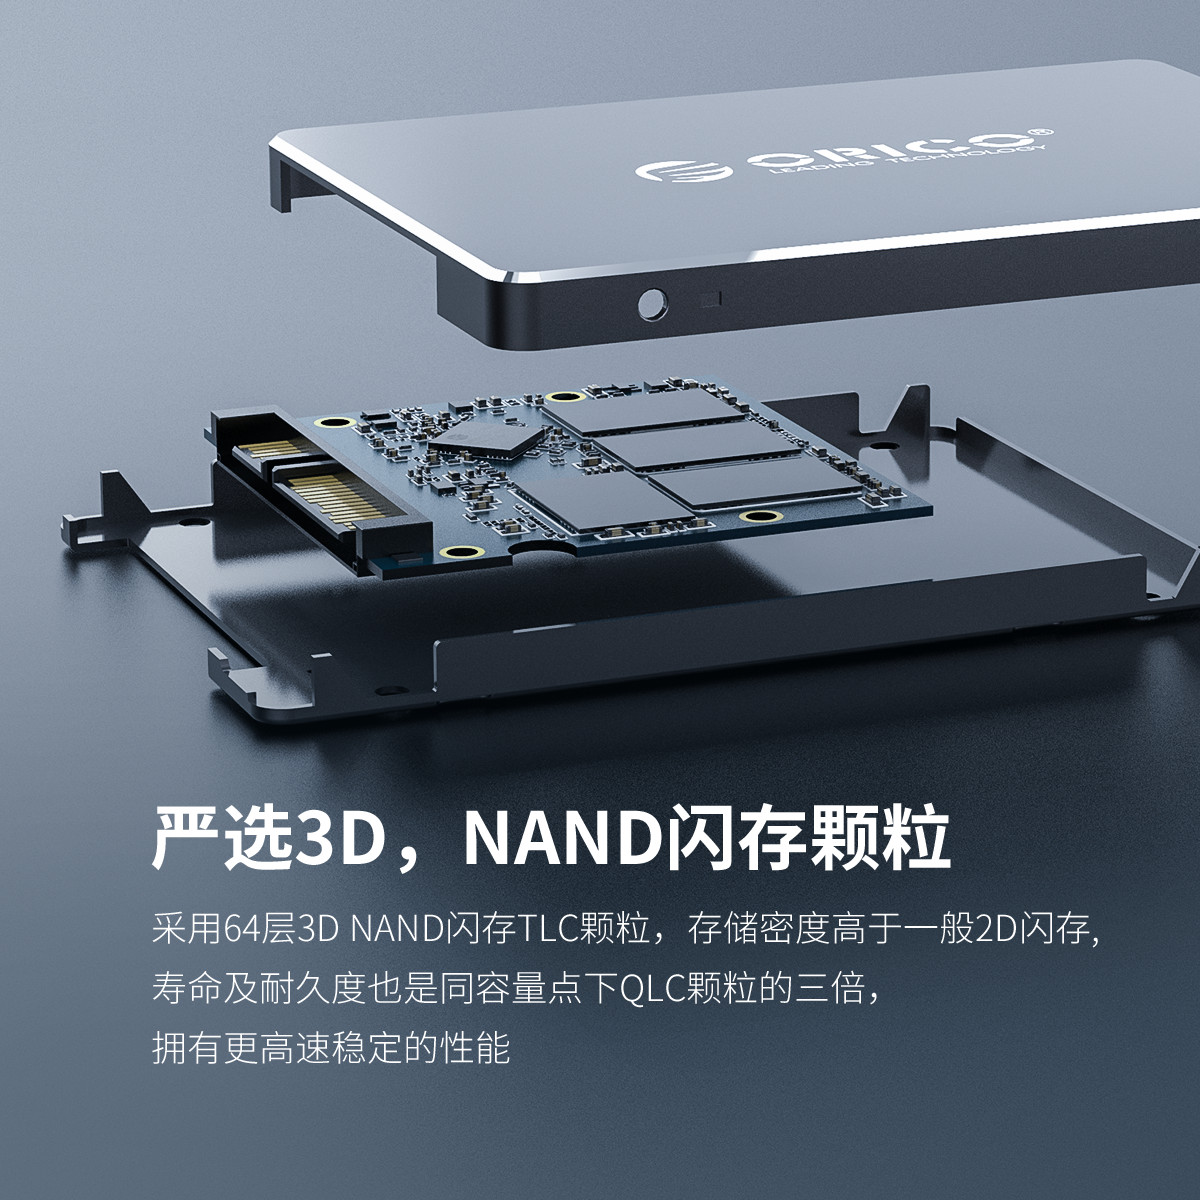 Orico 迅龙固态硬盘采用64层3D拥有更高速稳定的性能